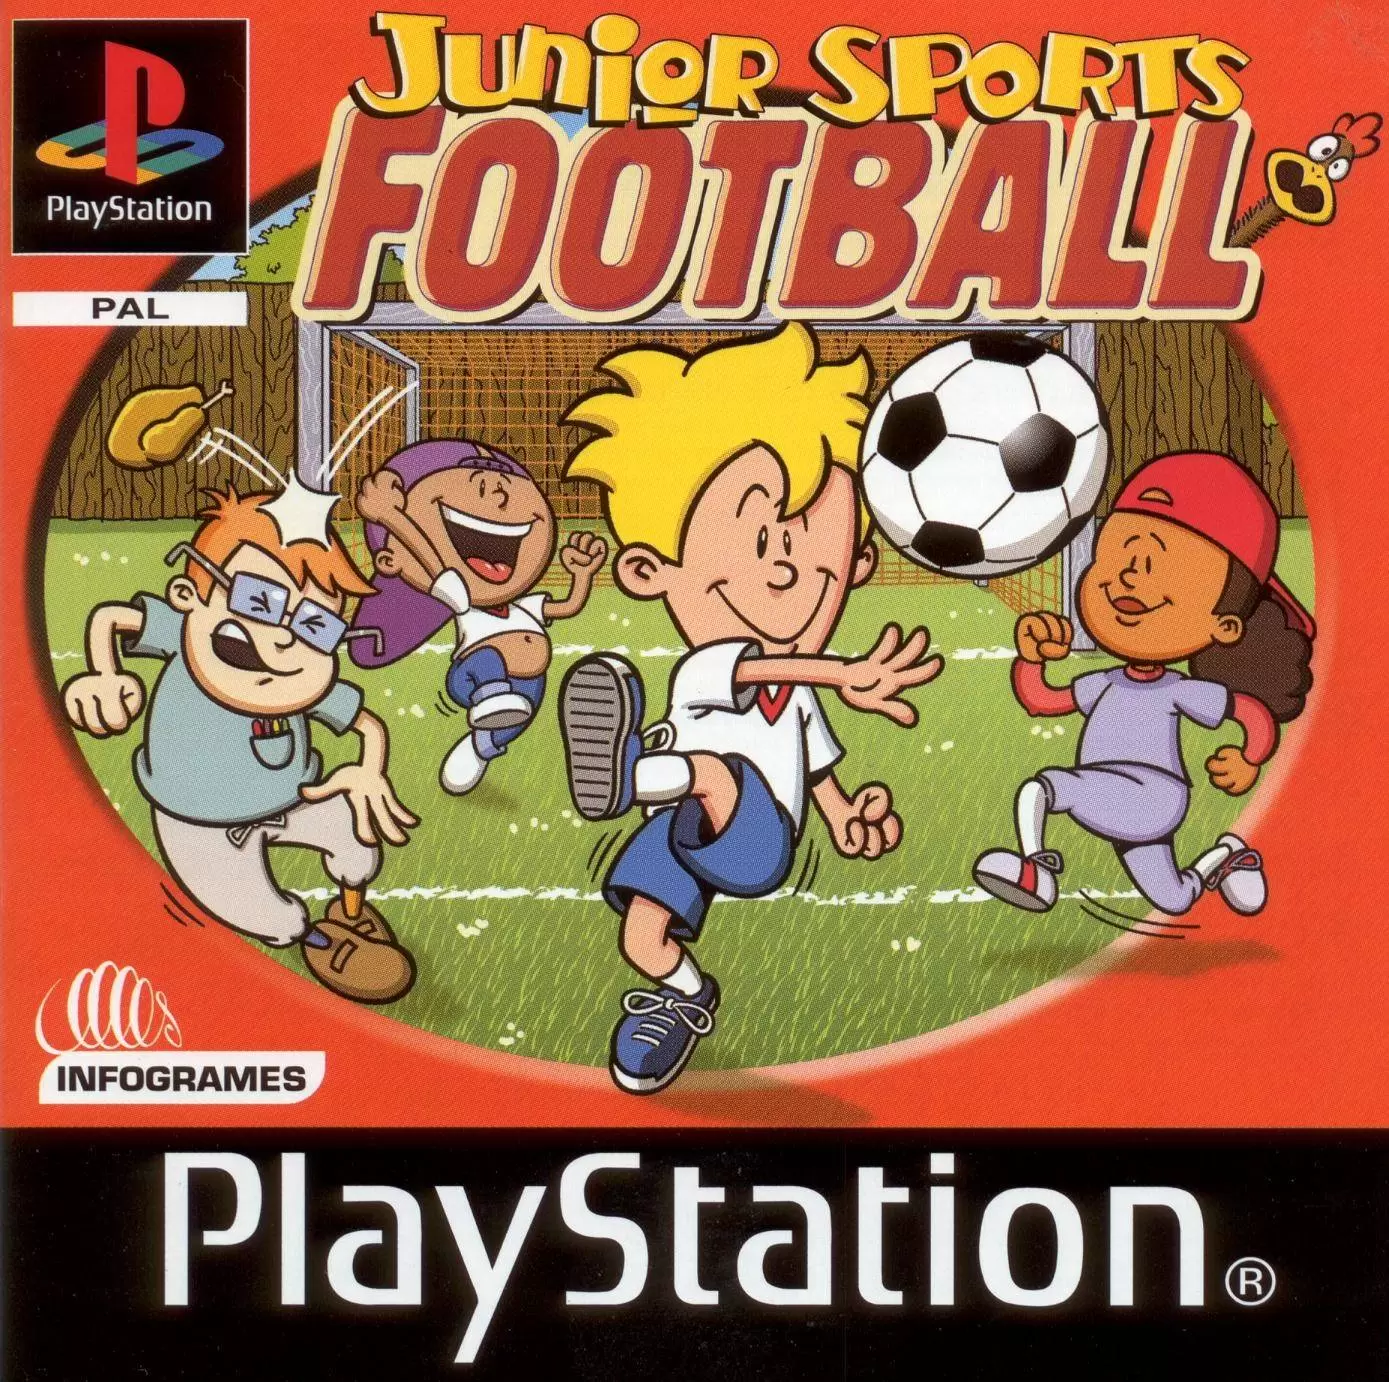 Playstation games - Junior Sports Football